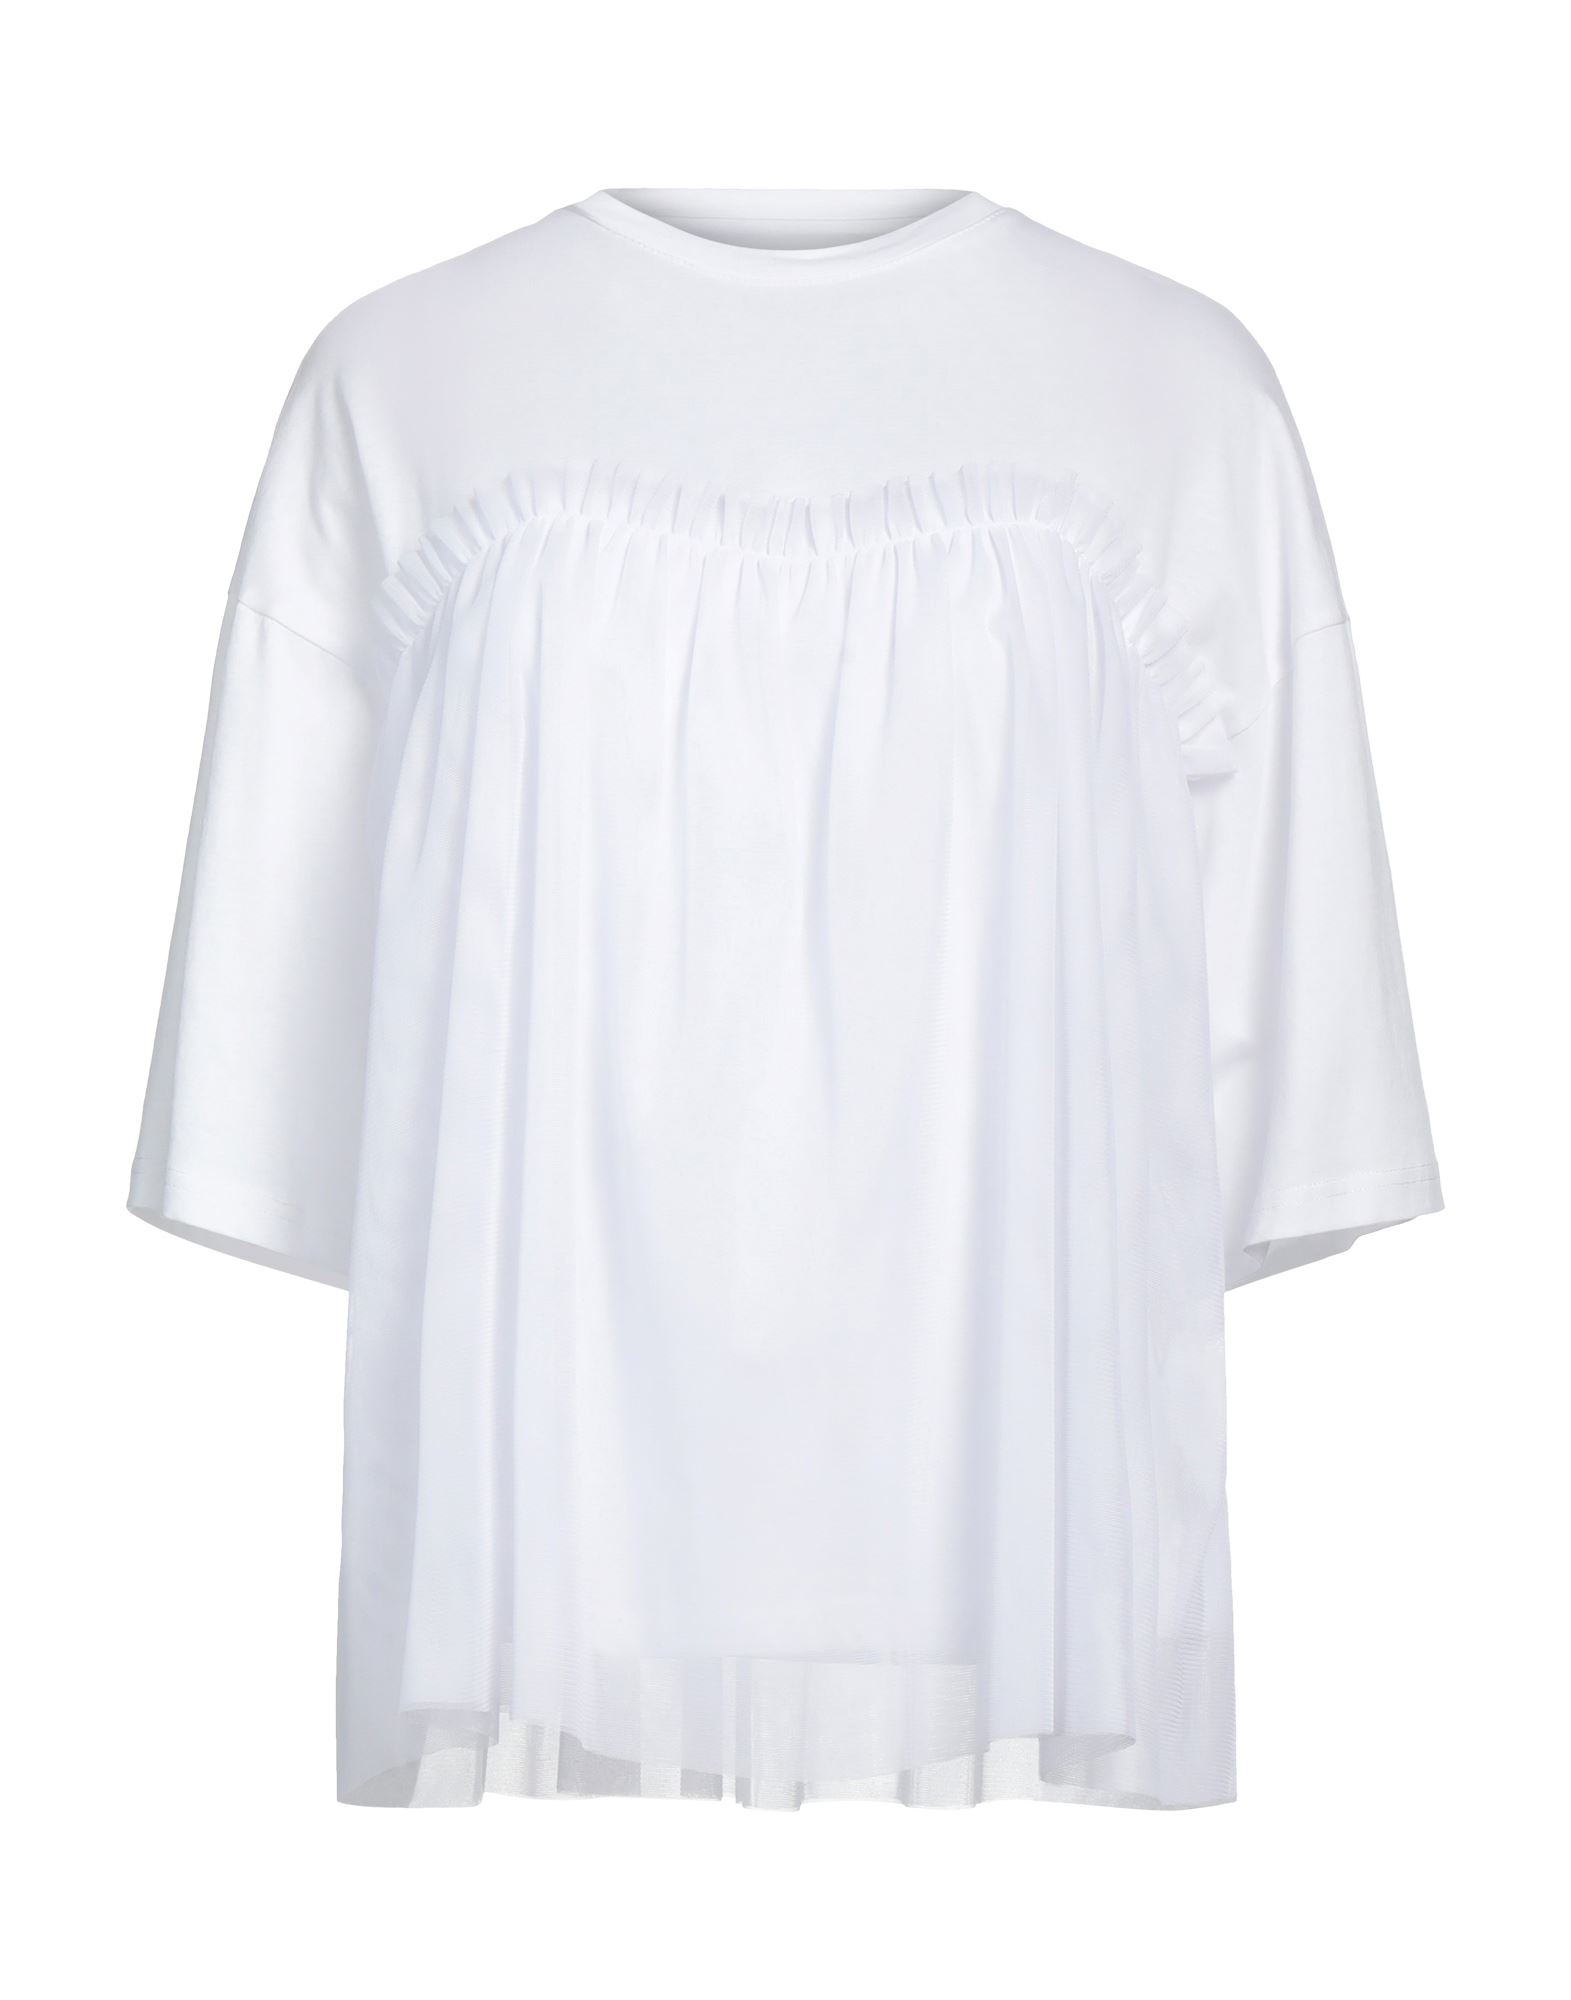 Silvian Heach T-shirts In White